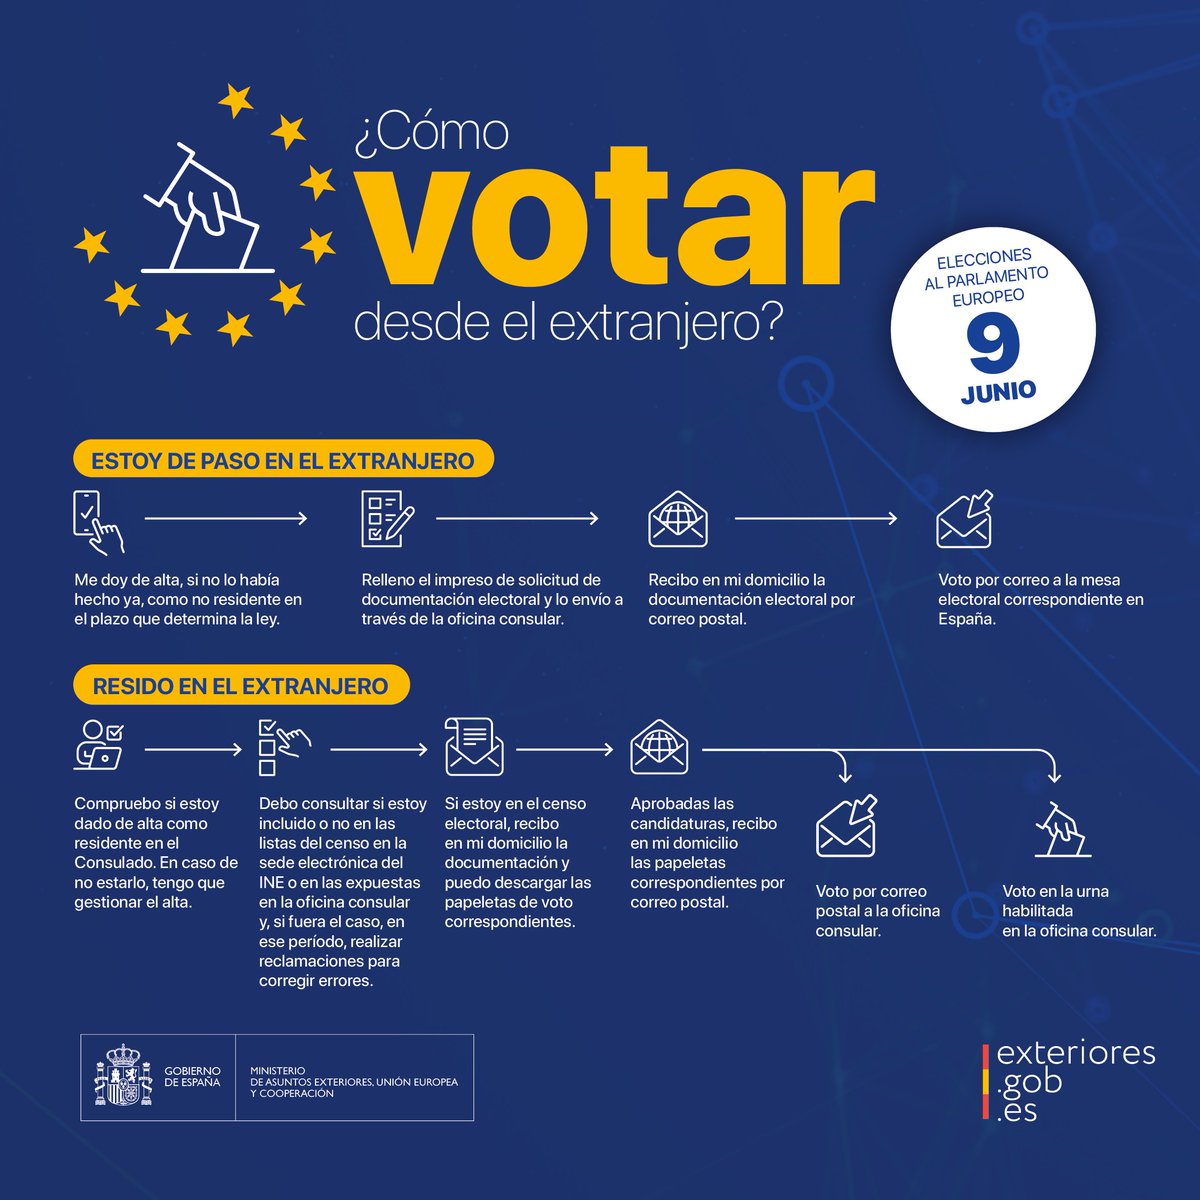 #VotoCERA: si eres español residente en el extranjero con derecho a voto en las #EleccionesEuropeas #EleccionesUE2024 del #9J, recuerda que el período para depositar el #VotoEnUrna es entre el 1 y el 6 de junio, ambos inclusive. Más ℹ️ en exteriores.gob.es/es/Paginas/Ele… #VotoExterior